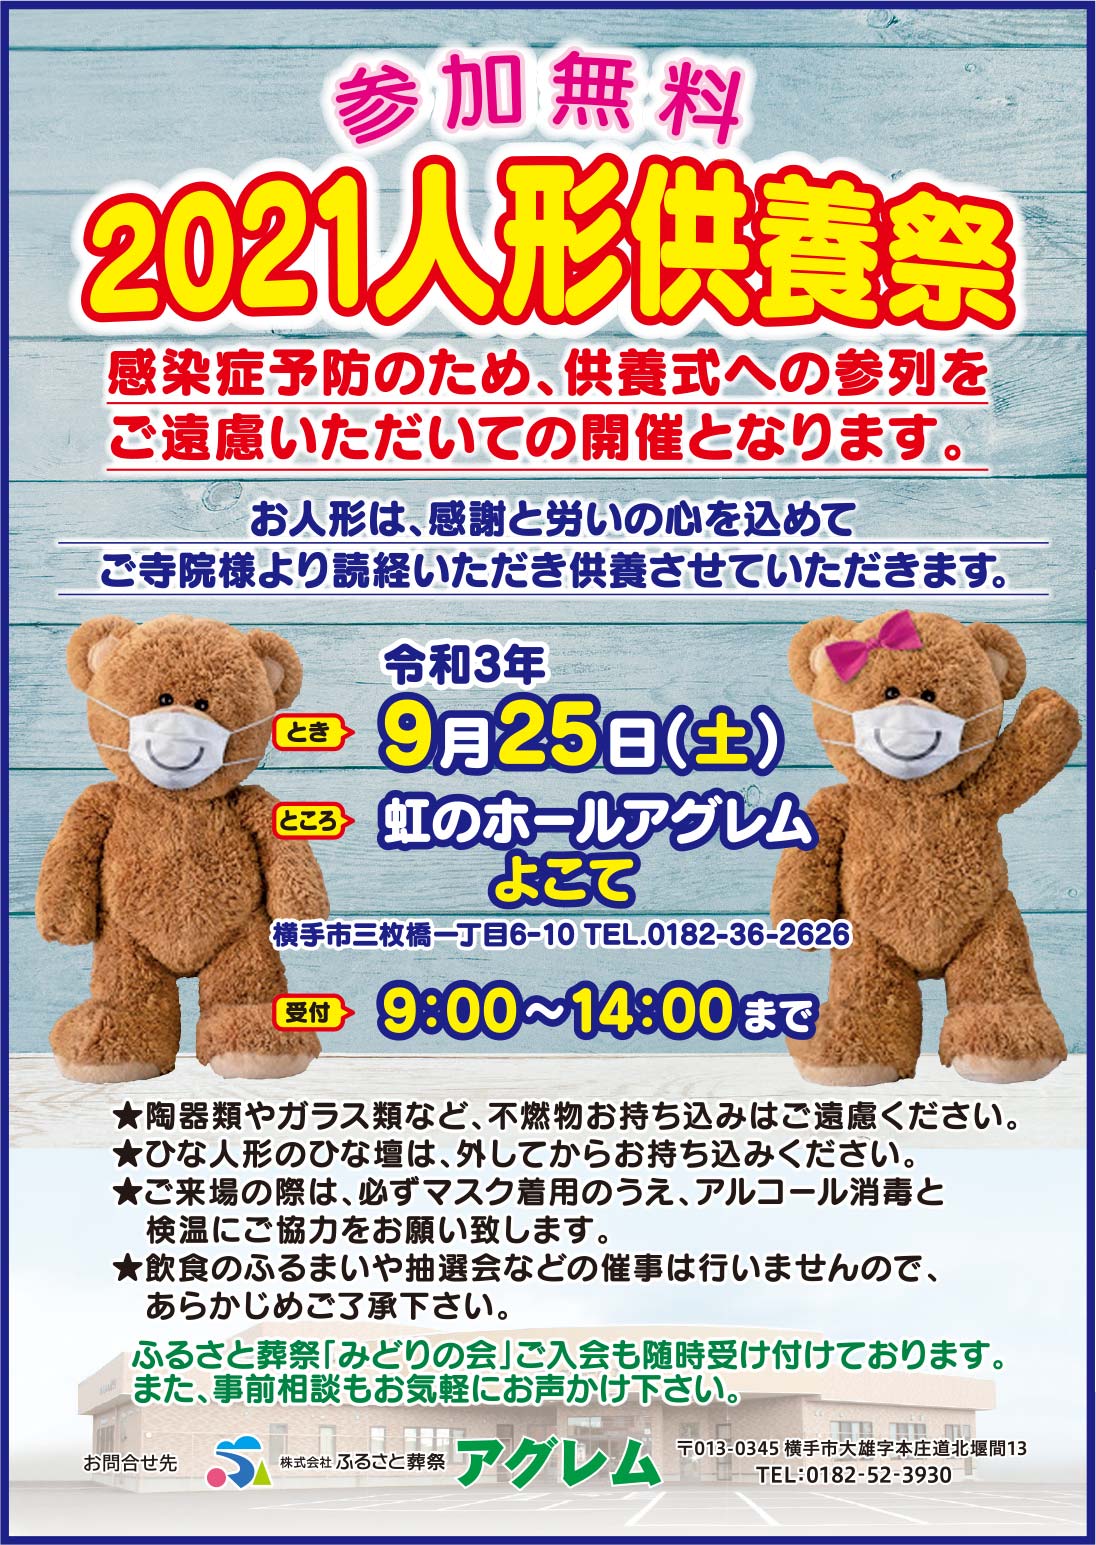 株式会社ふるさと葬祭アグレム様の2022新春号 横手版広告